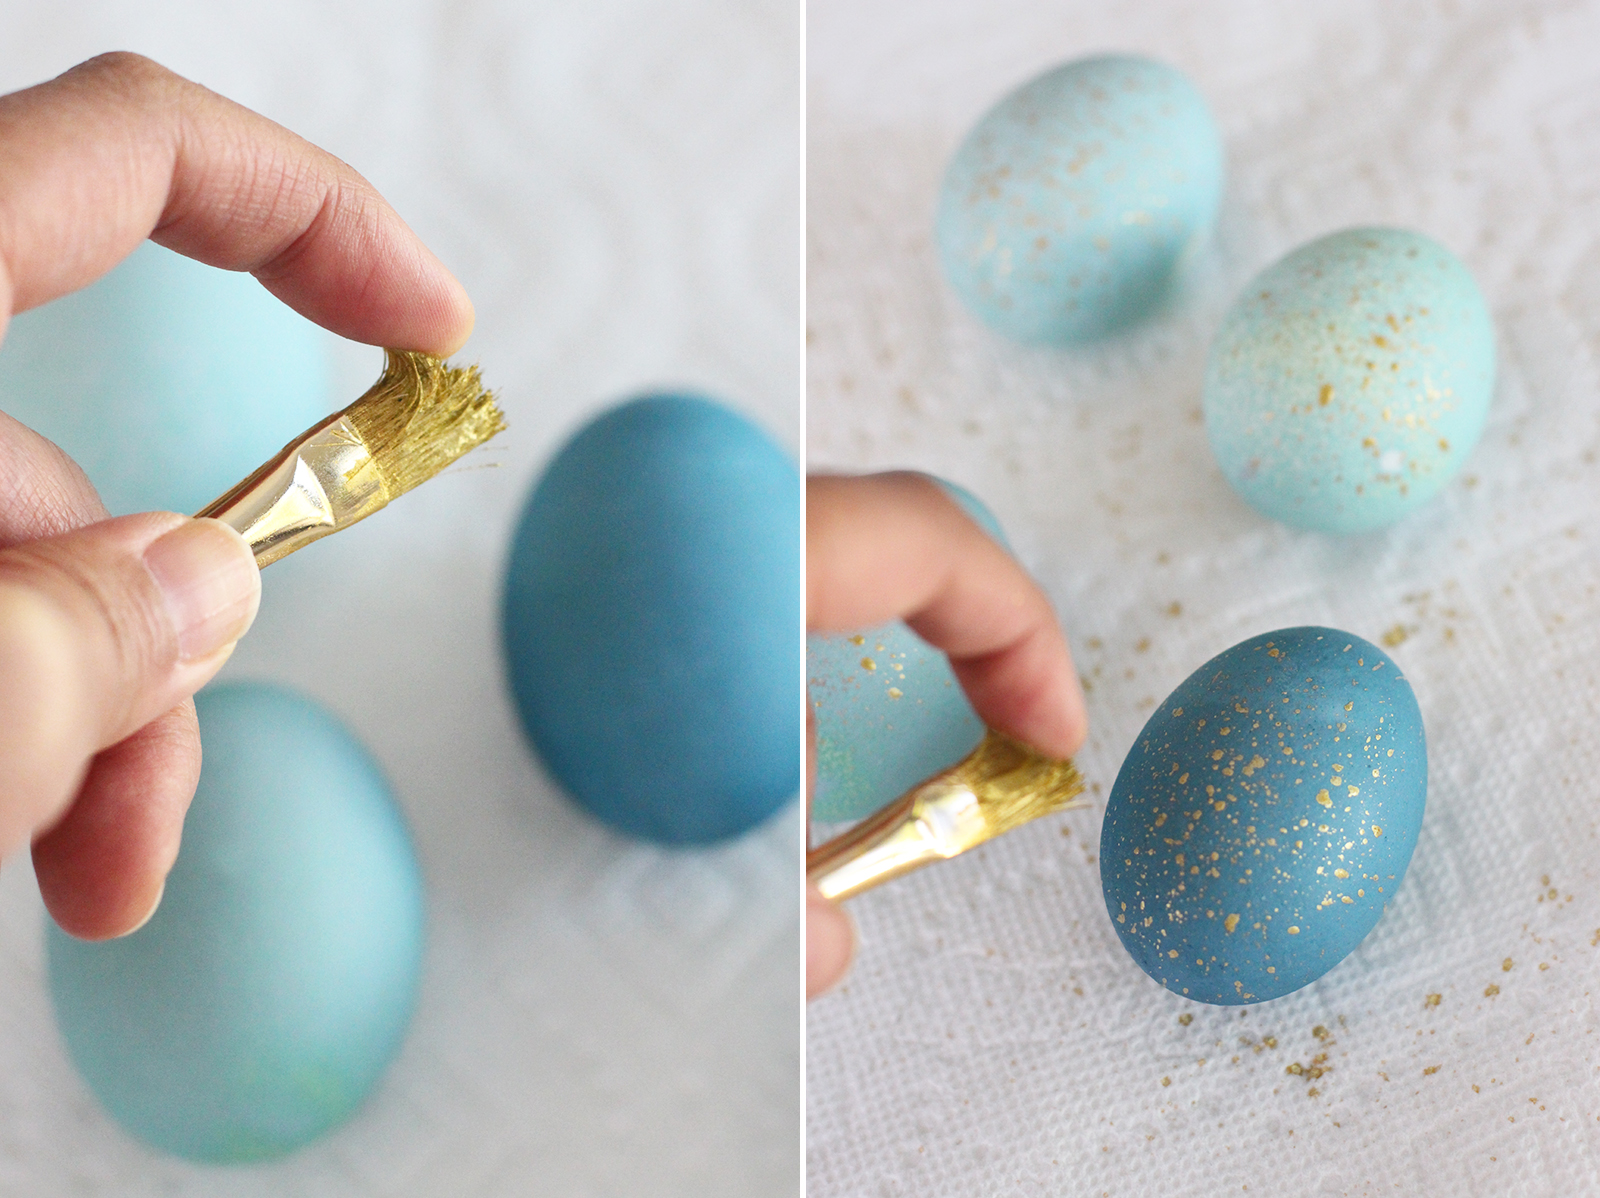 Можно красить яйца красками. Покраска яиц на Пасху. Красим яйца на Пасху. Пасхальные яйца способы окрашивания. Необычное окрашивание яиц к Пасхе.